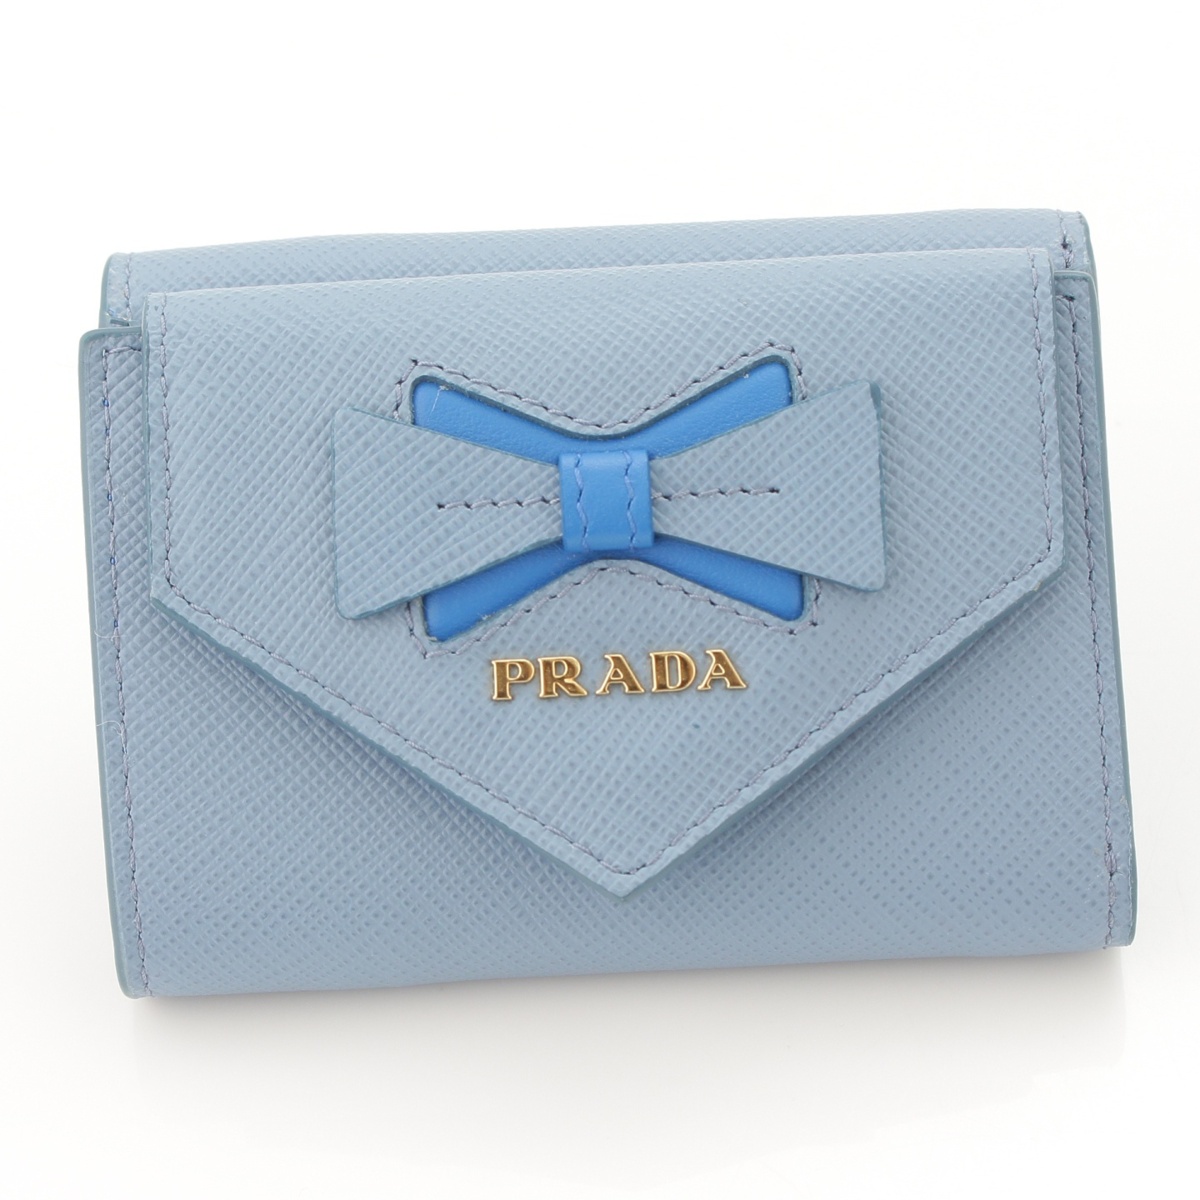 プラダ(Prada) 現行品 サフィアーノ リボン 三つ折り財布 1MH021 ブルー